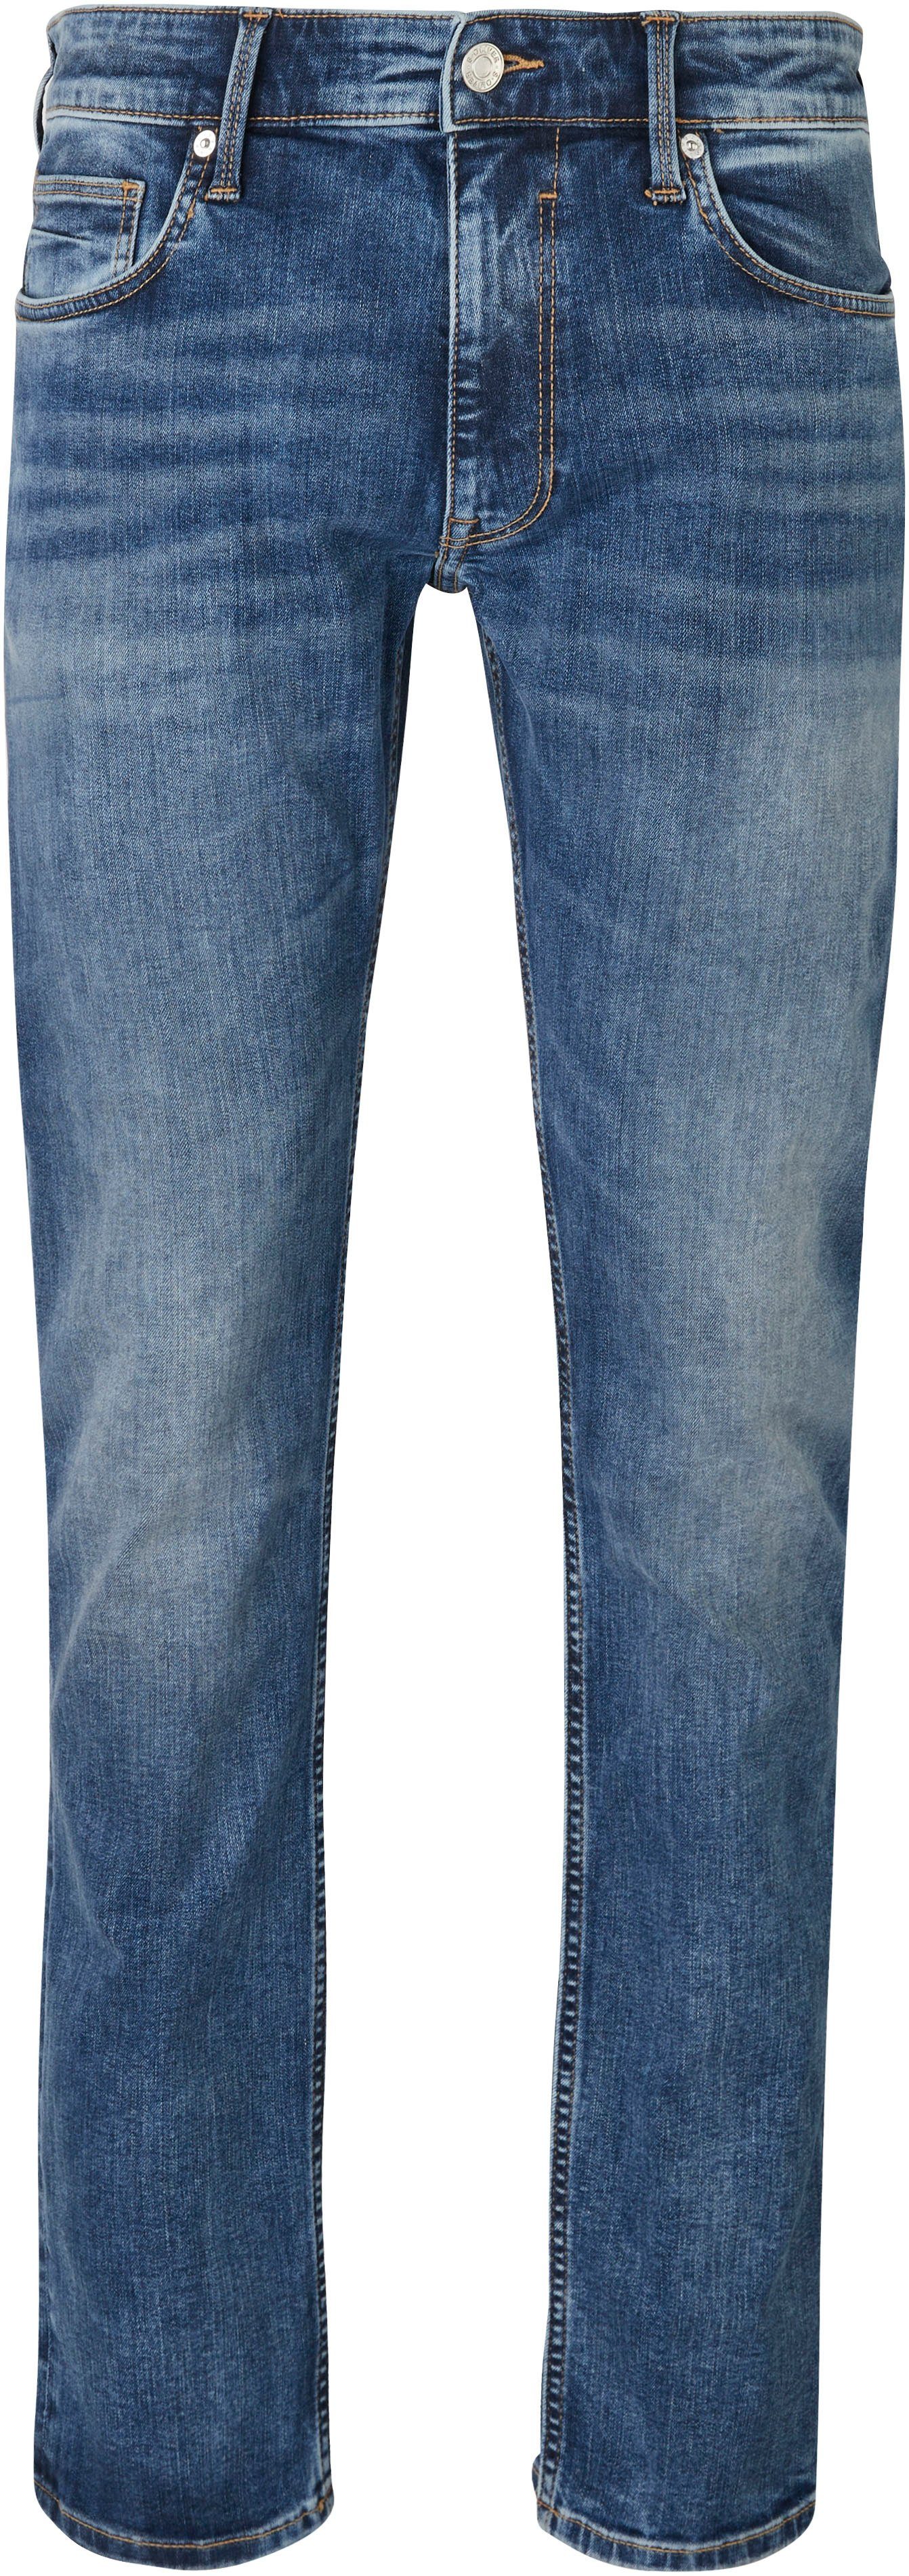 s.Oliver Bequeme Jeans mit Gesäß- und Eingrifftaschen mid blue 34